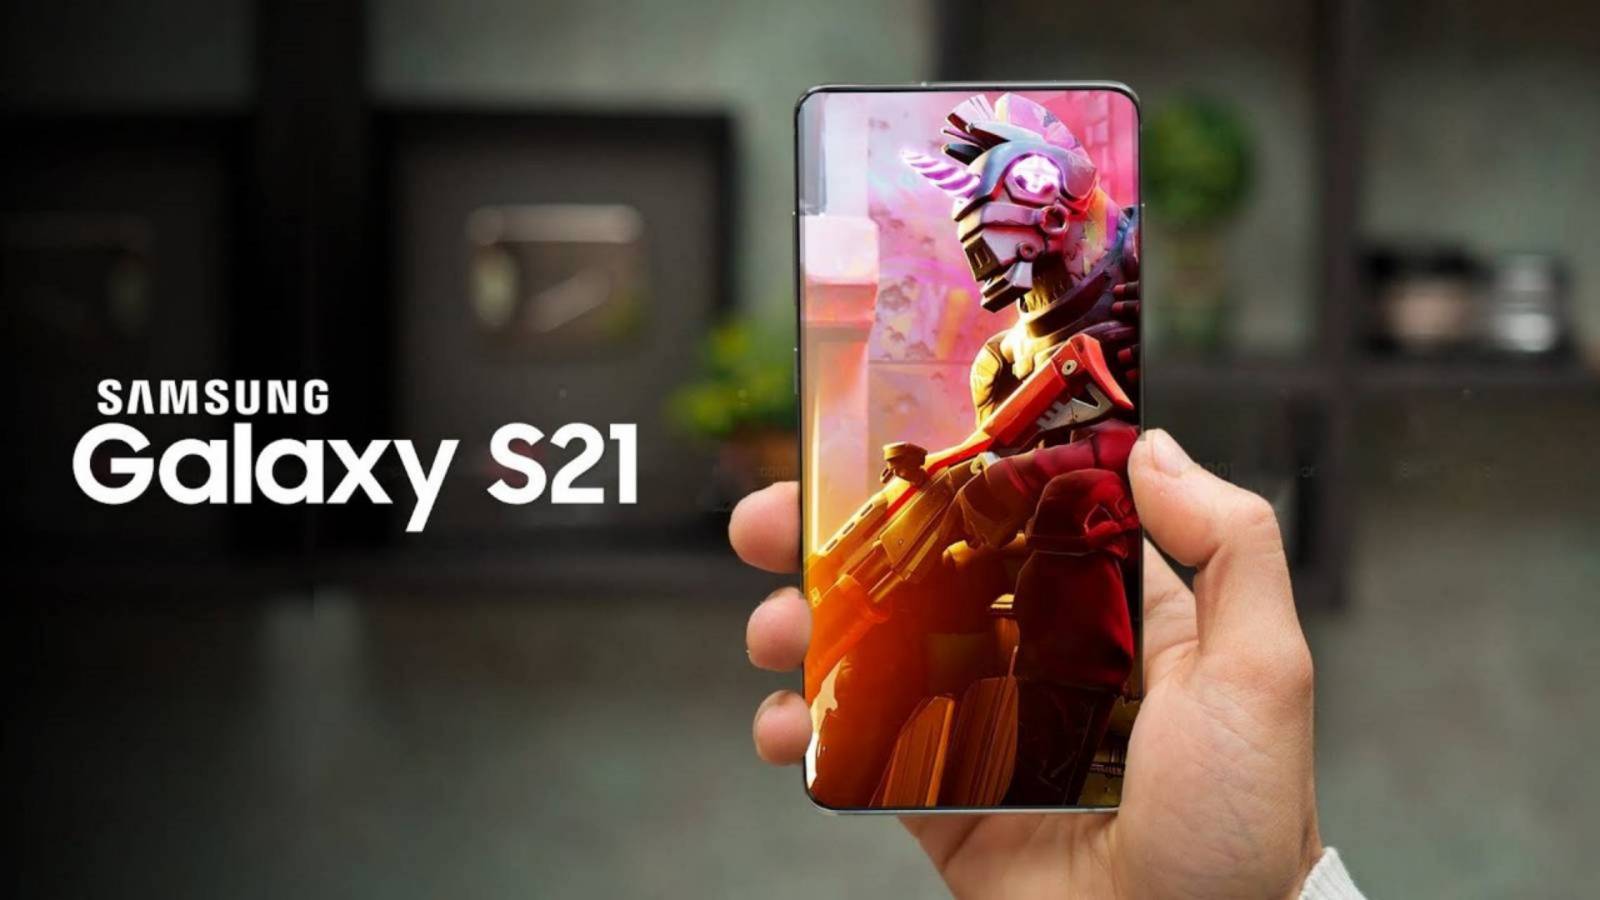 Samsung Galaxy S21 Ultra Exynos